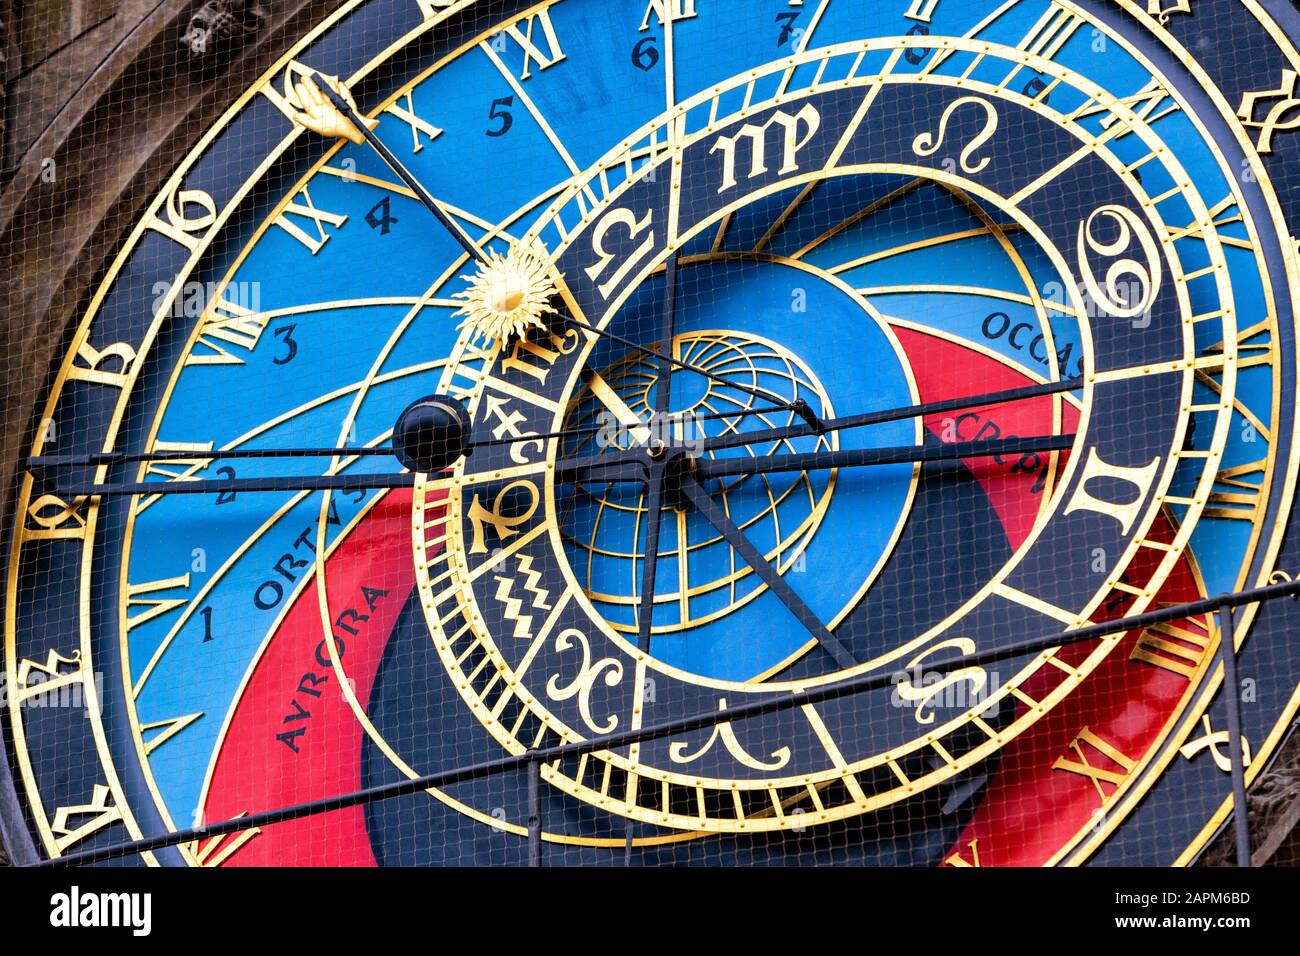 Tschechische Republik, Prag, Nahaufnahme der Prager Astronomischen Uhr Stockfoto